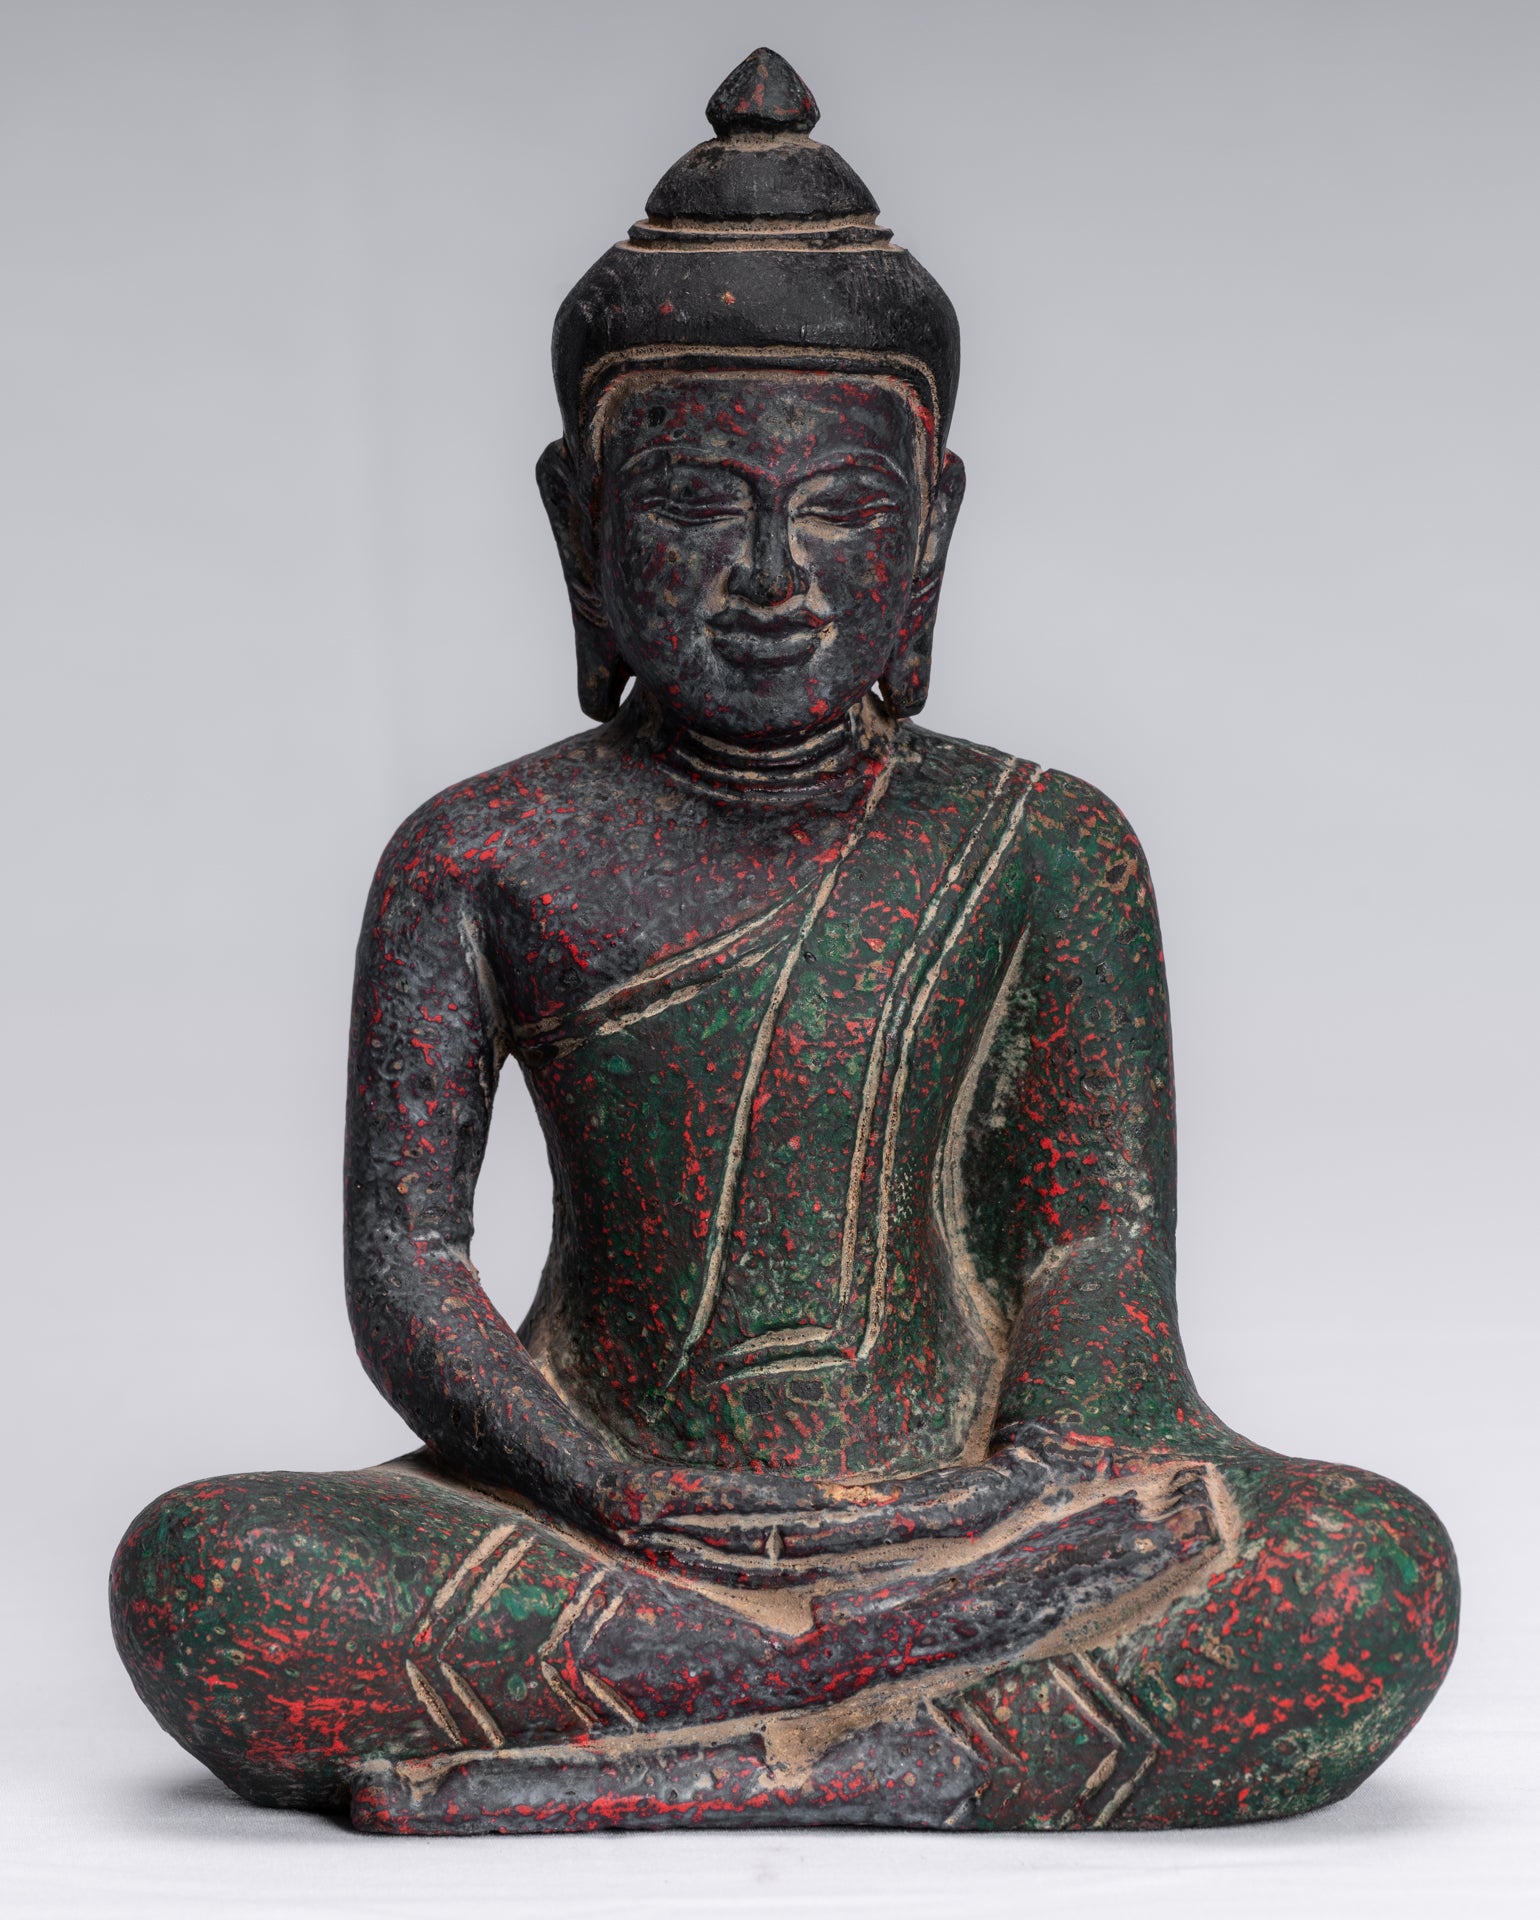 Bouddha bois assis lotus méditation 20cm statue sculpture